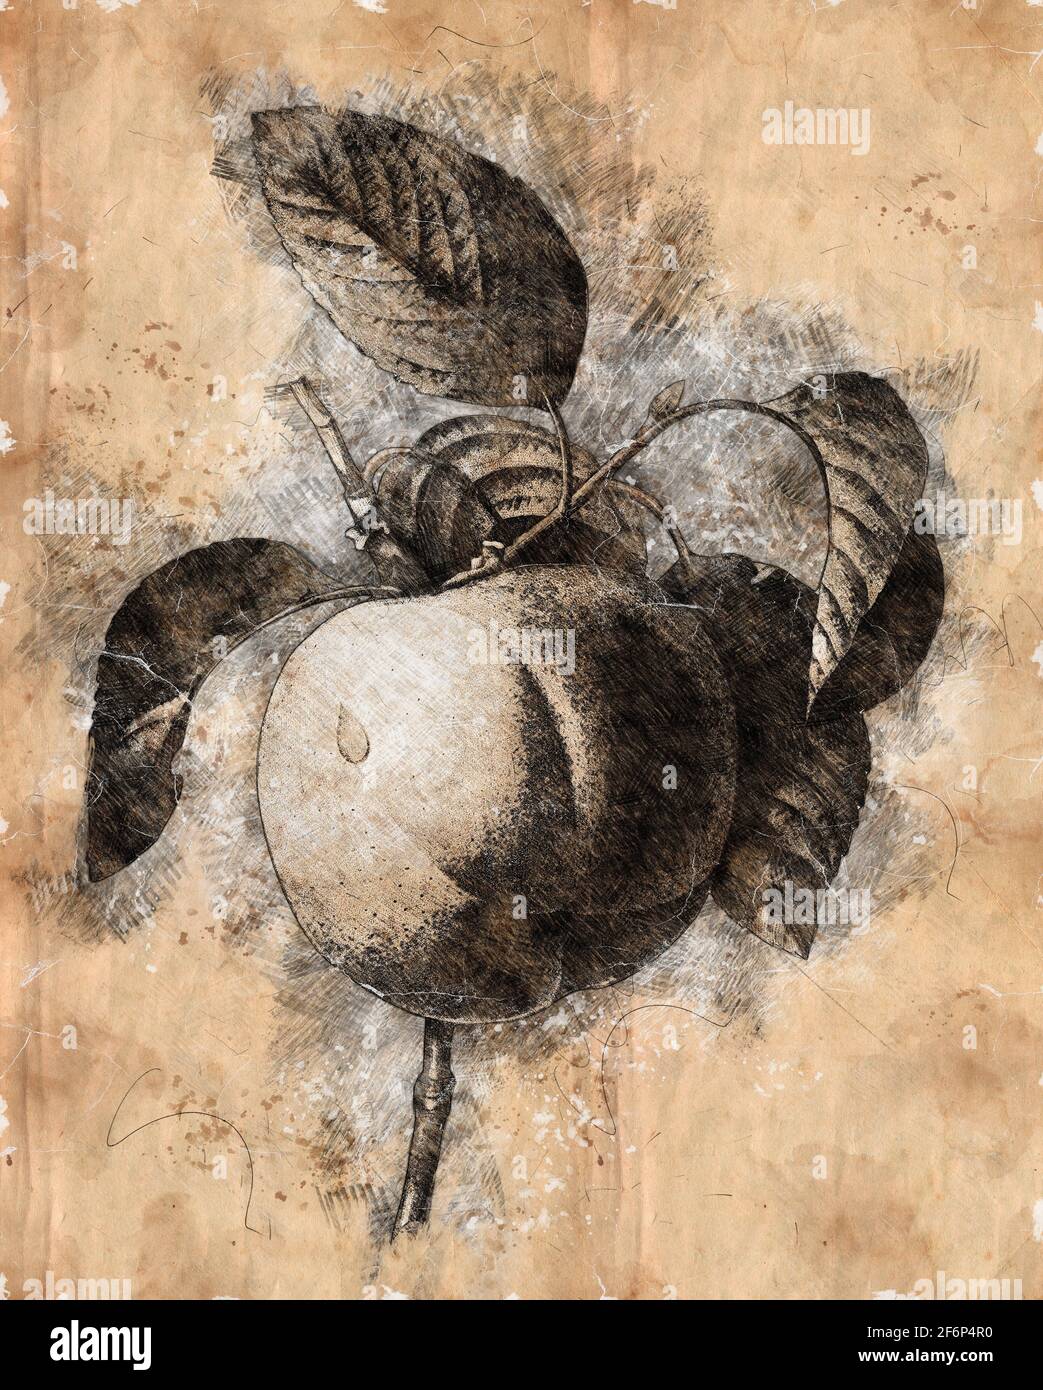 Immagine migliorata digitalmente di un dipinto a mano del XIX secolo Engraving illustrazione di un Calville Blanc (Apple) di Pierre-Joseph Redoute. Pubblicato su Choi Foto Stock